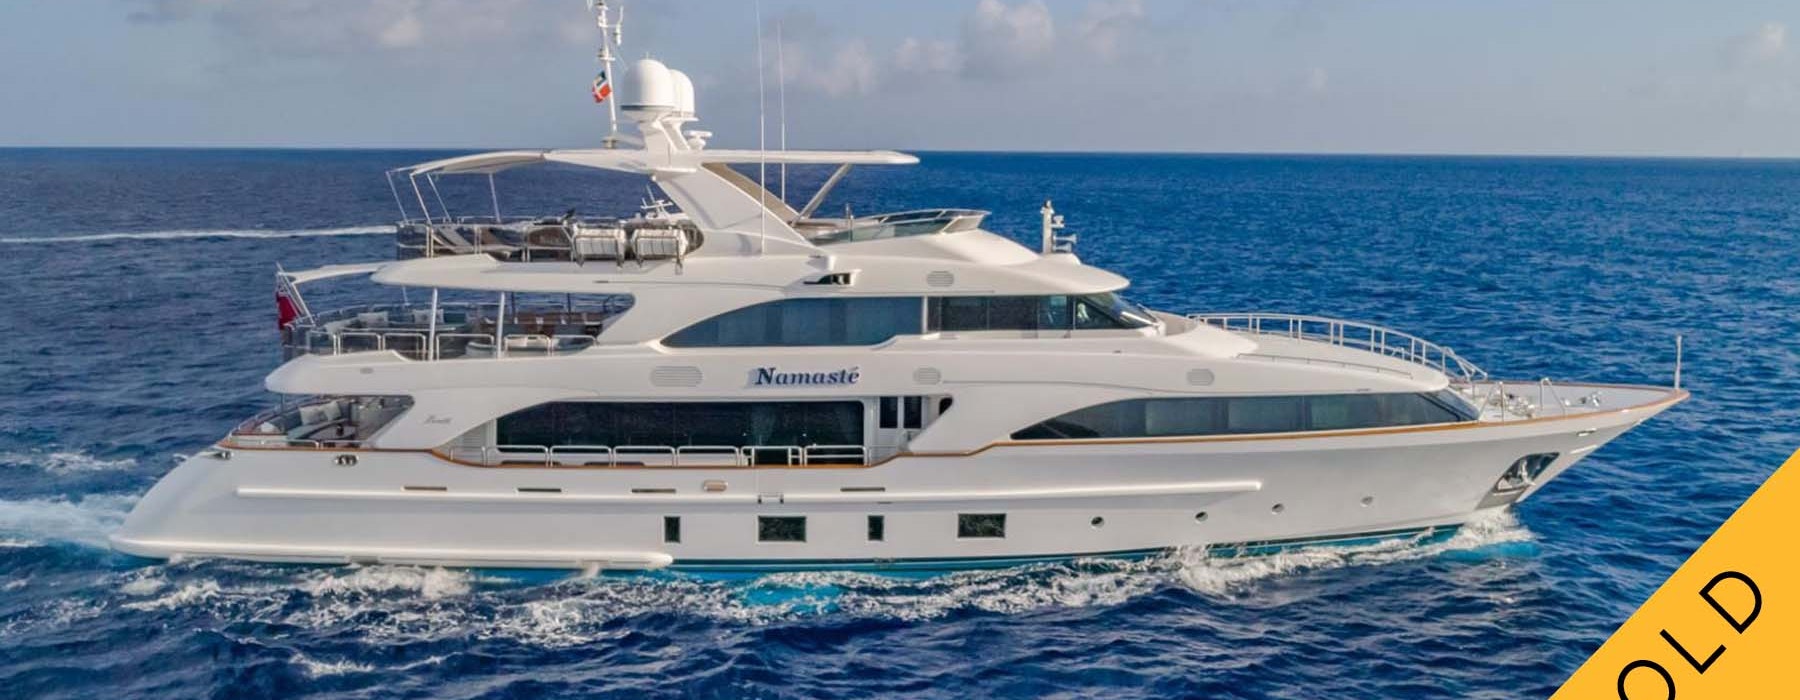 Luxury yacht Benetti NAMASTE Sold